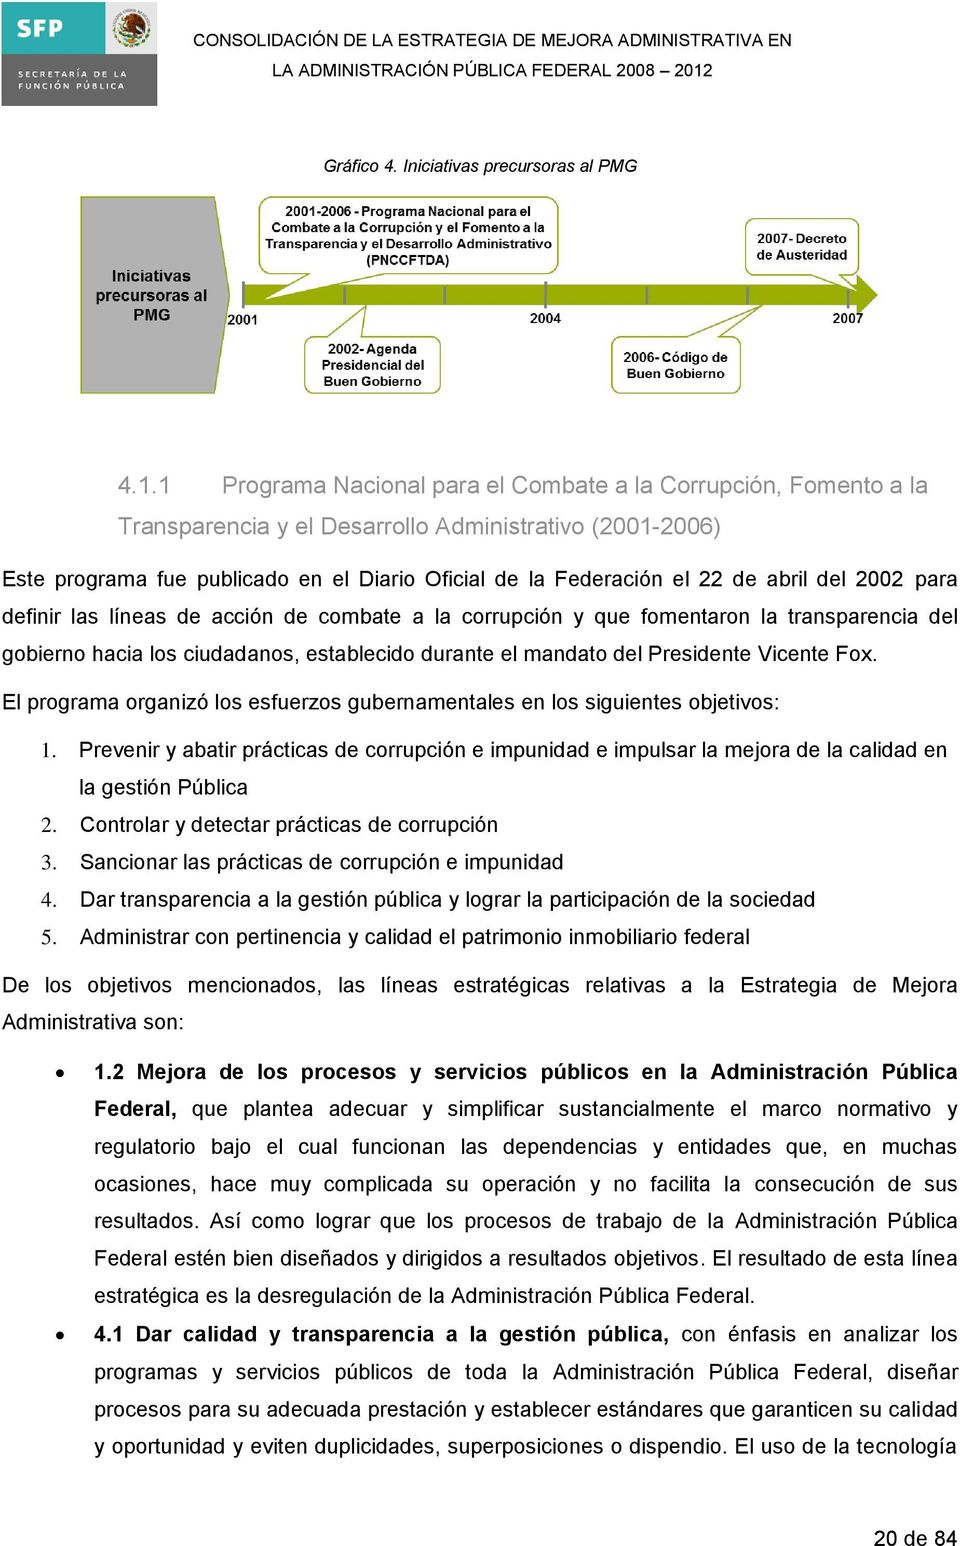 abril del 2002 para definir las líneas de acción de combate a la corrupción y que fomentaron la transparencia del gobierno hacia los ciudadanos, establecido durante el mandato del Presidente Vicente